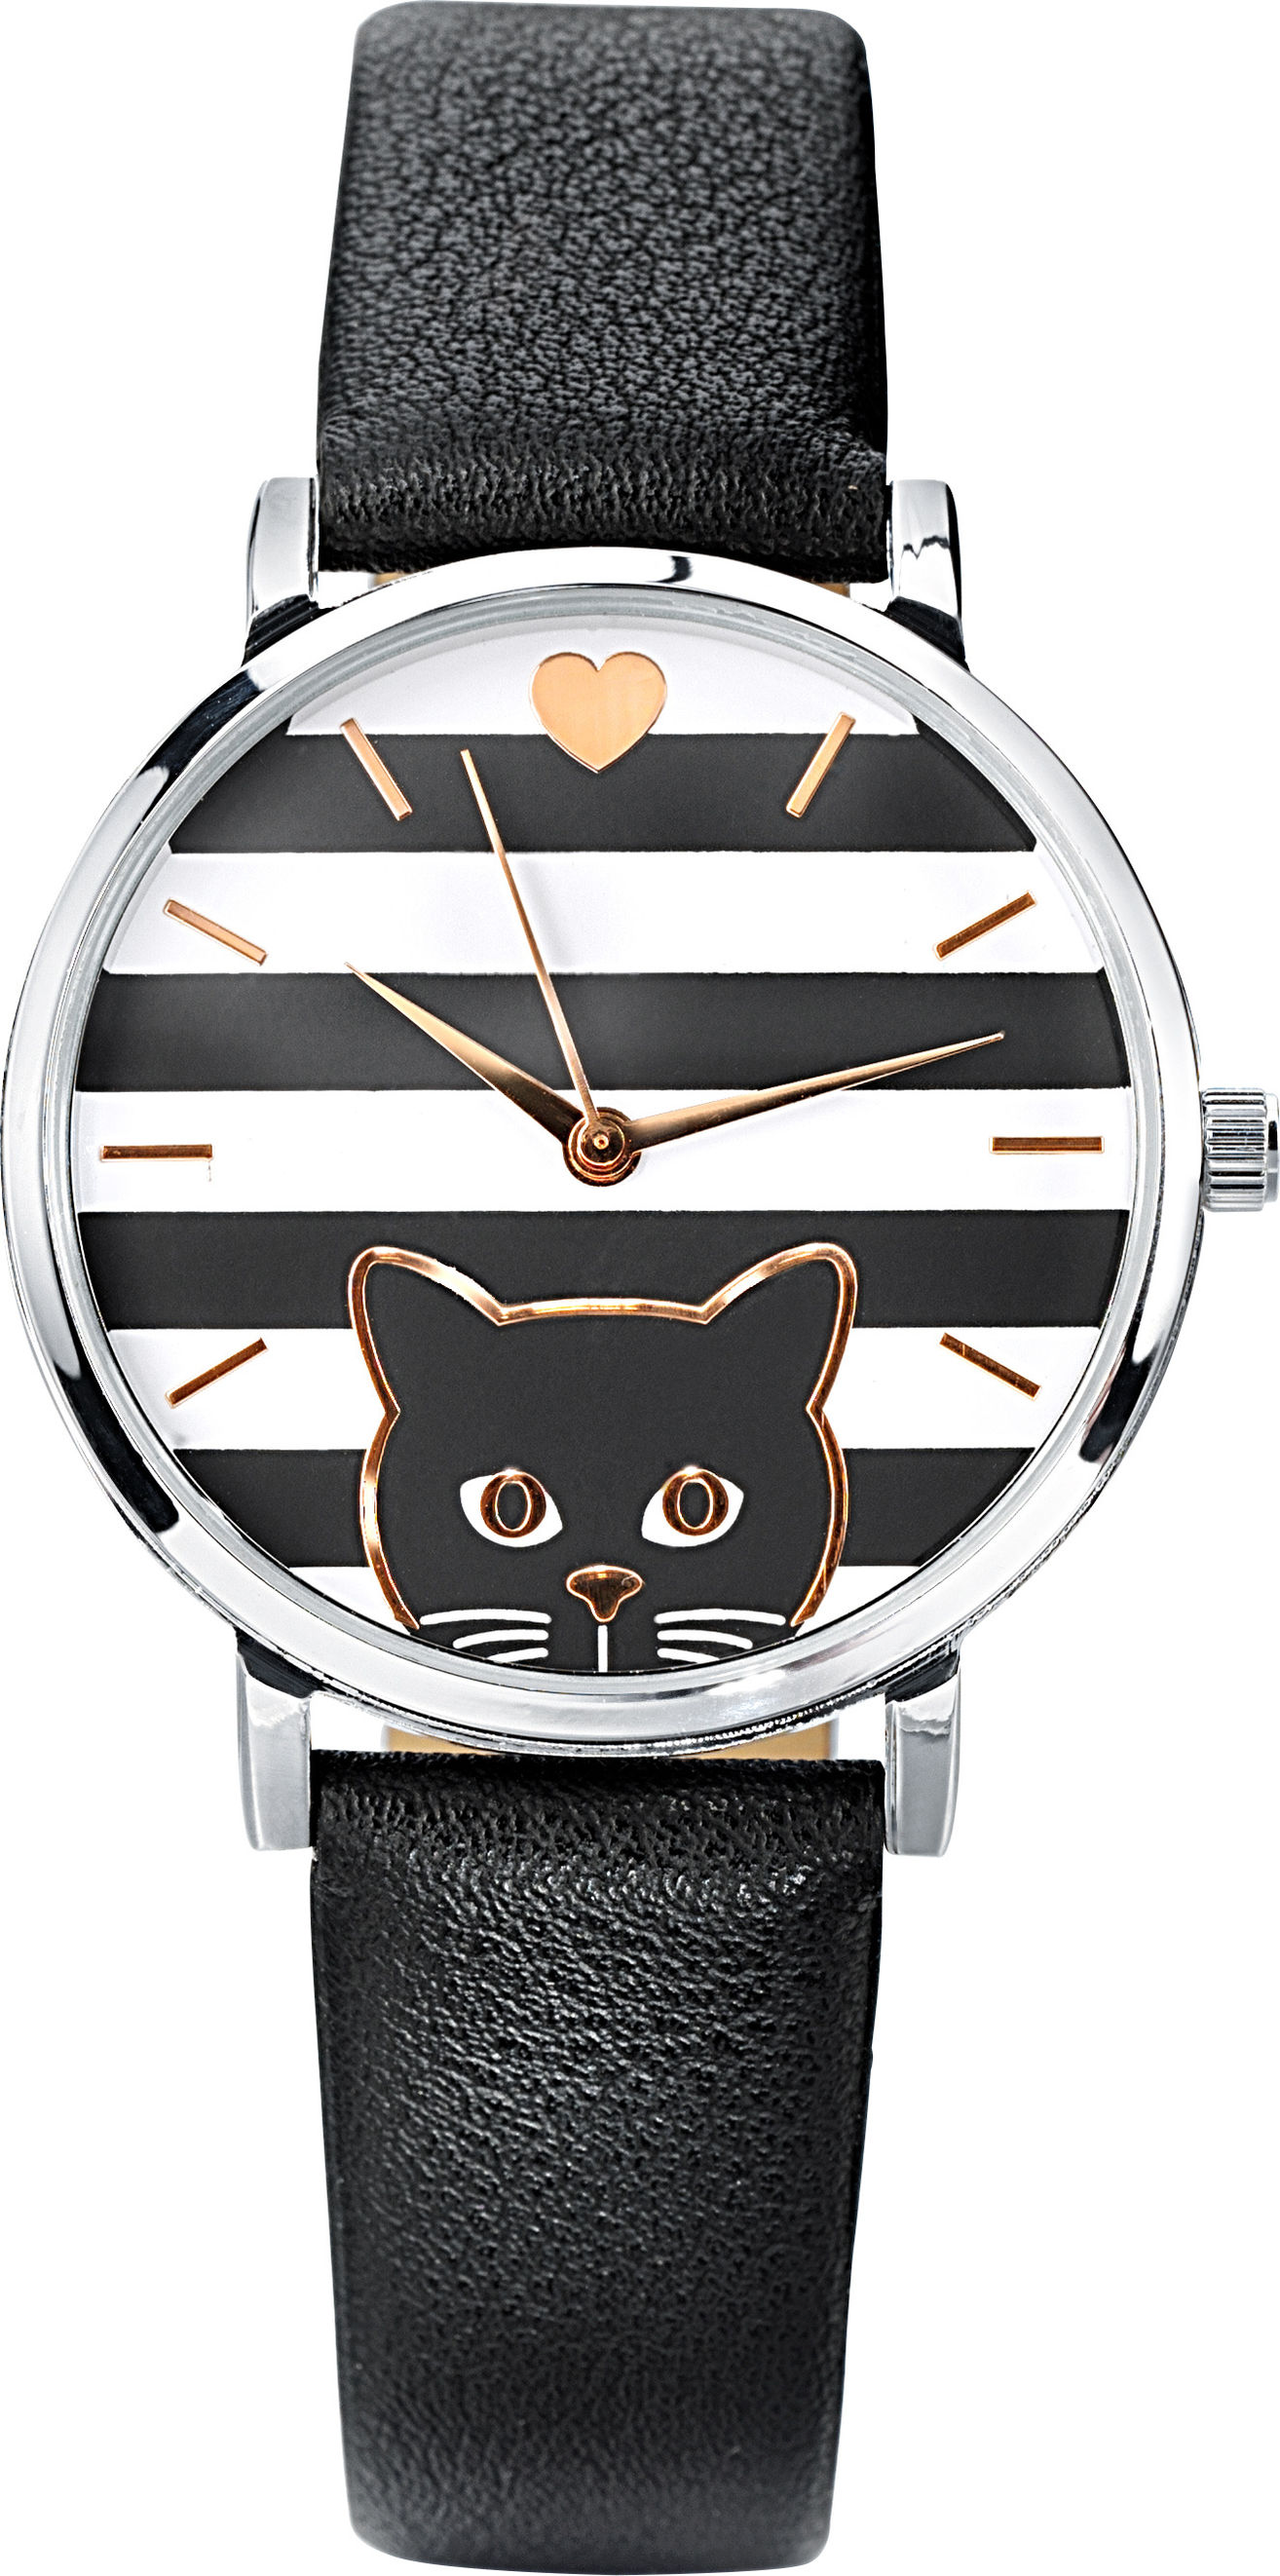 Damen Armbanduhr Katze jetzt bei Weltbild.de bestellen